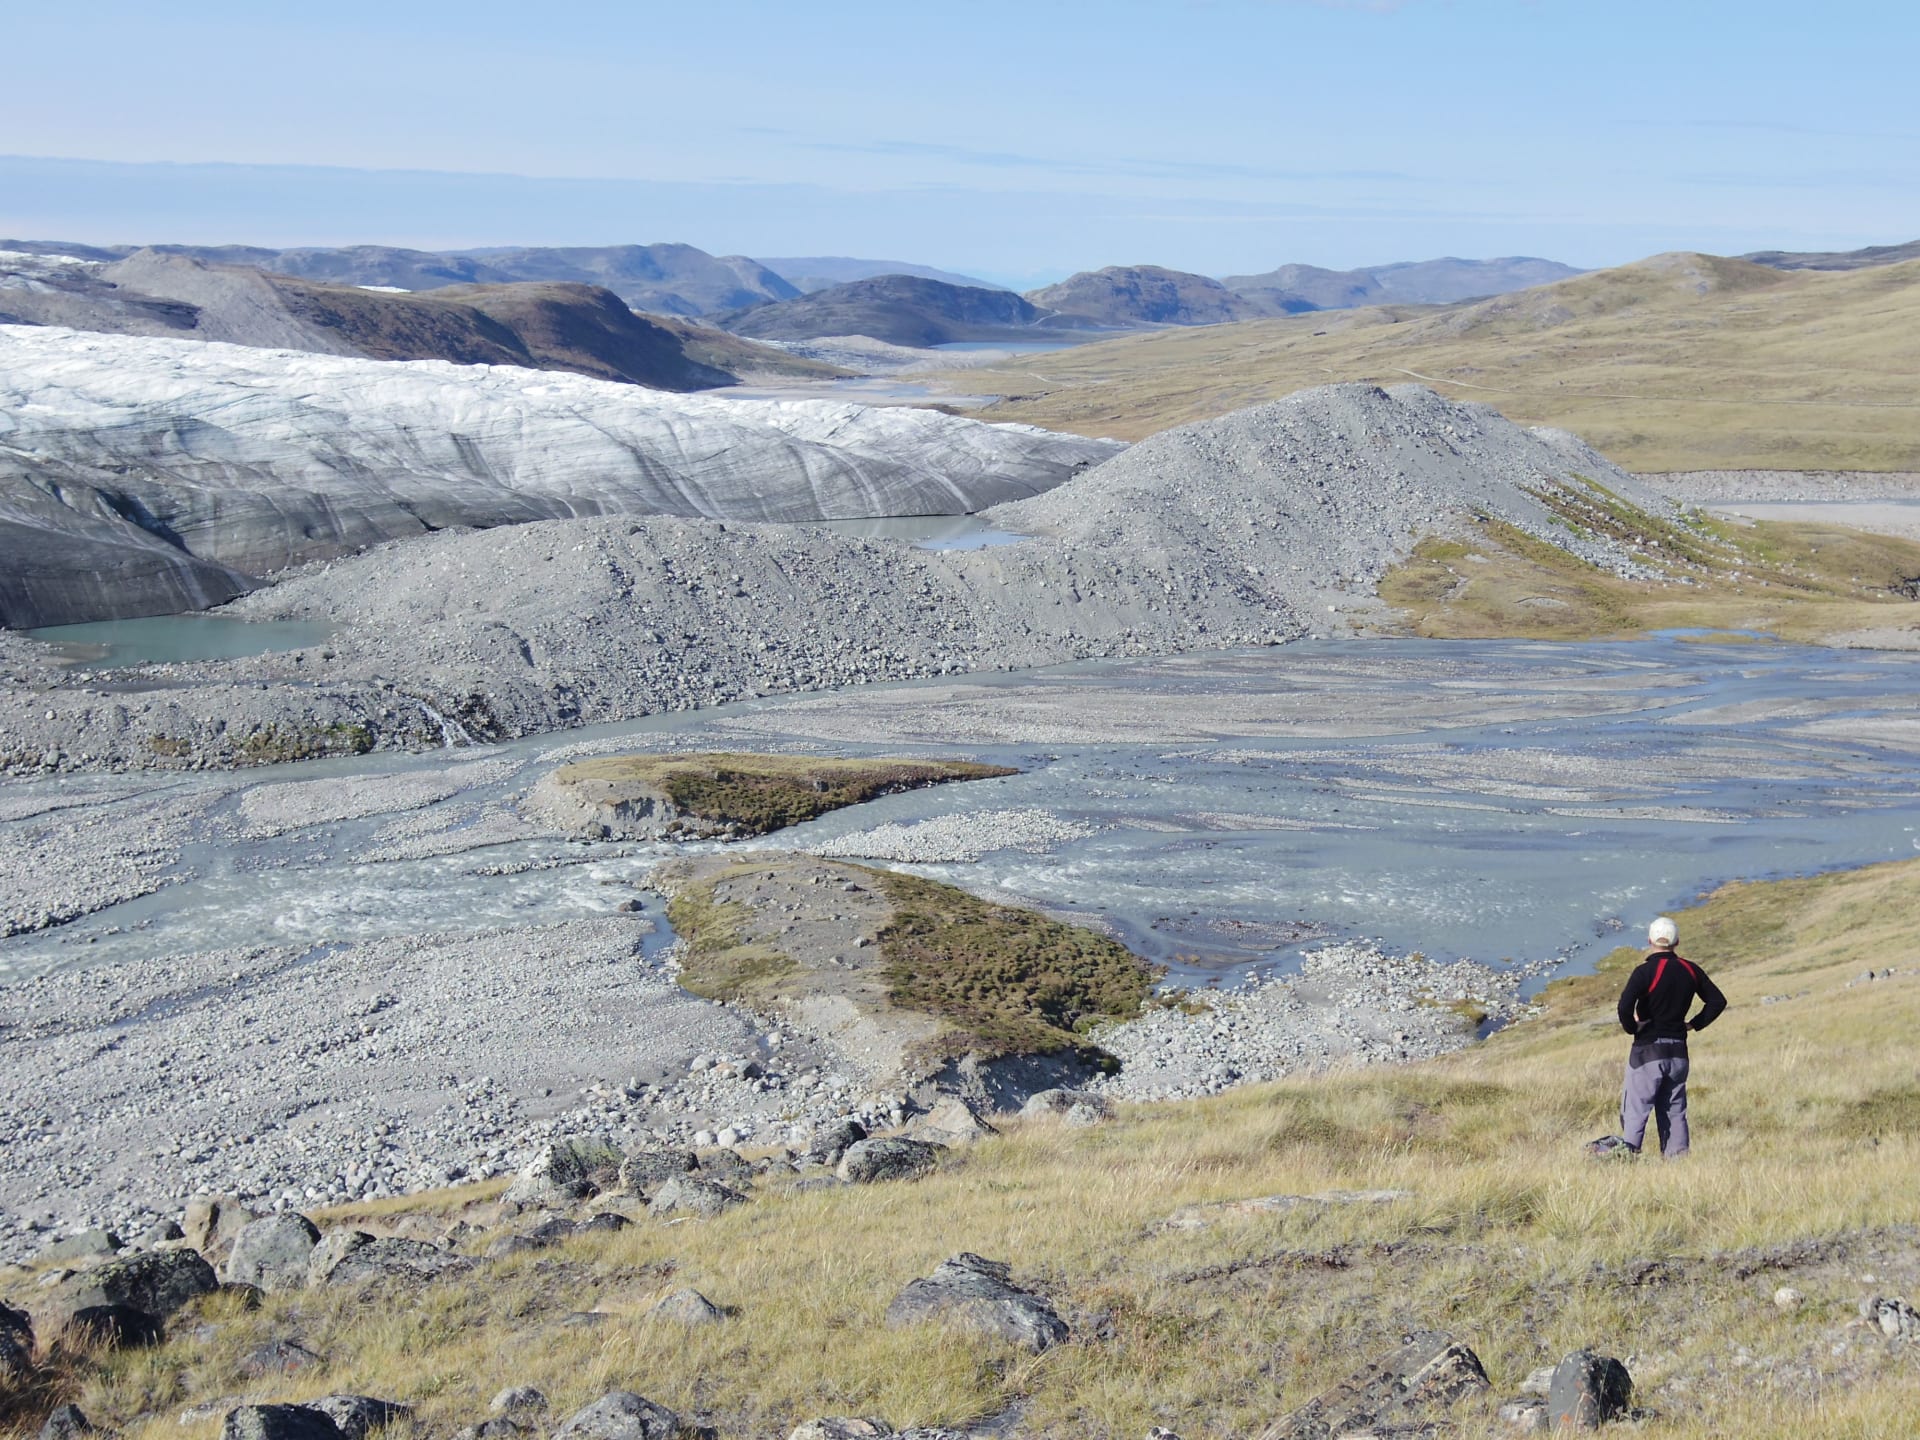 غرينلاند تصبح أكثر خضرة.. كيف يؤدي ذلك "عواقب وخيمة" لعالمنا؟